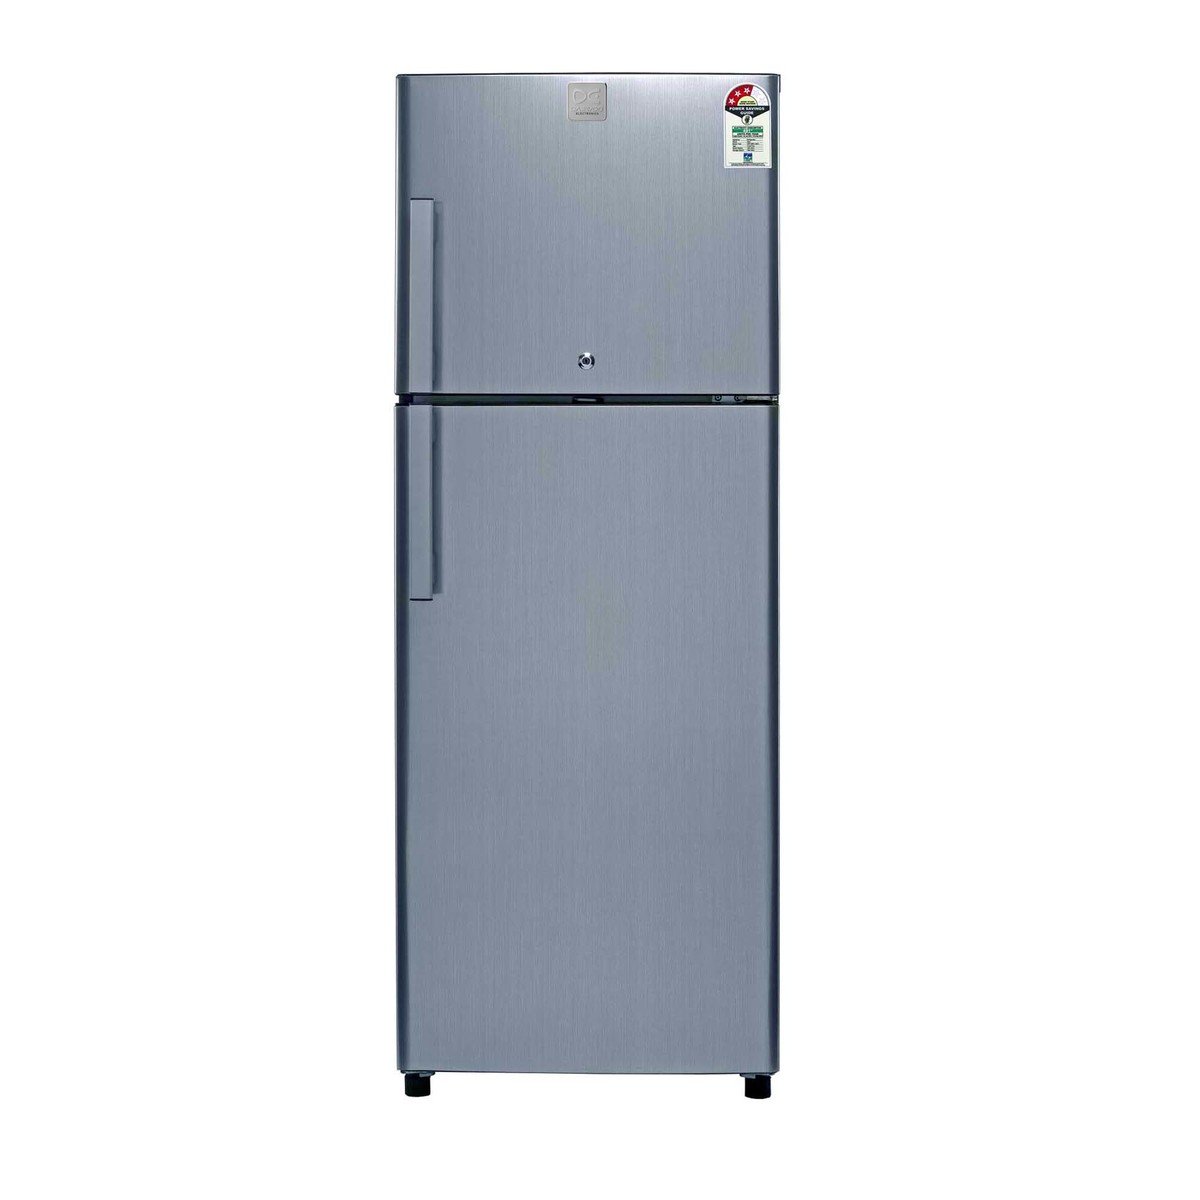 Daewoo Double Door Refrigerator FRX89S 250 Ltr